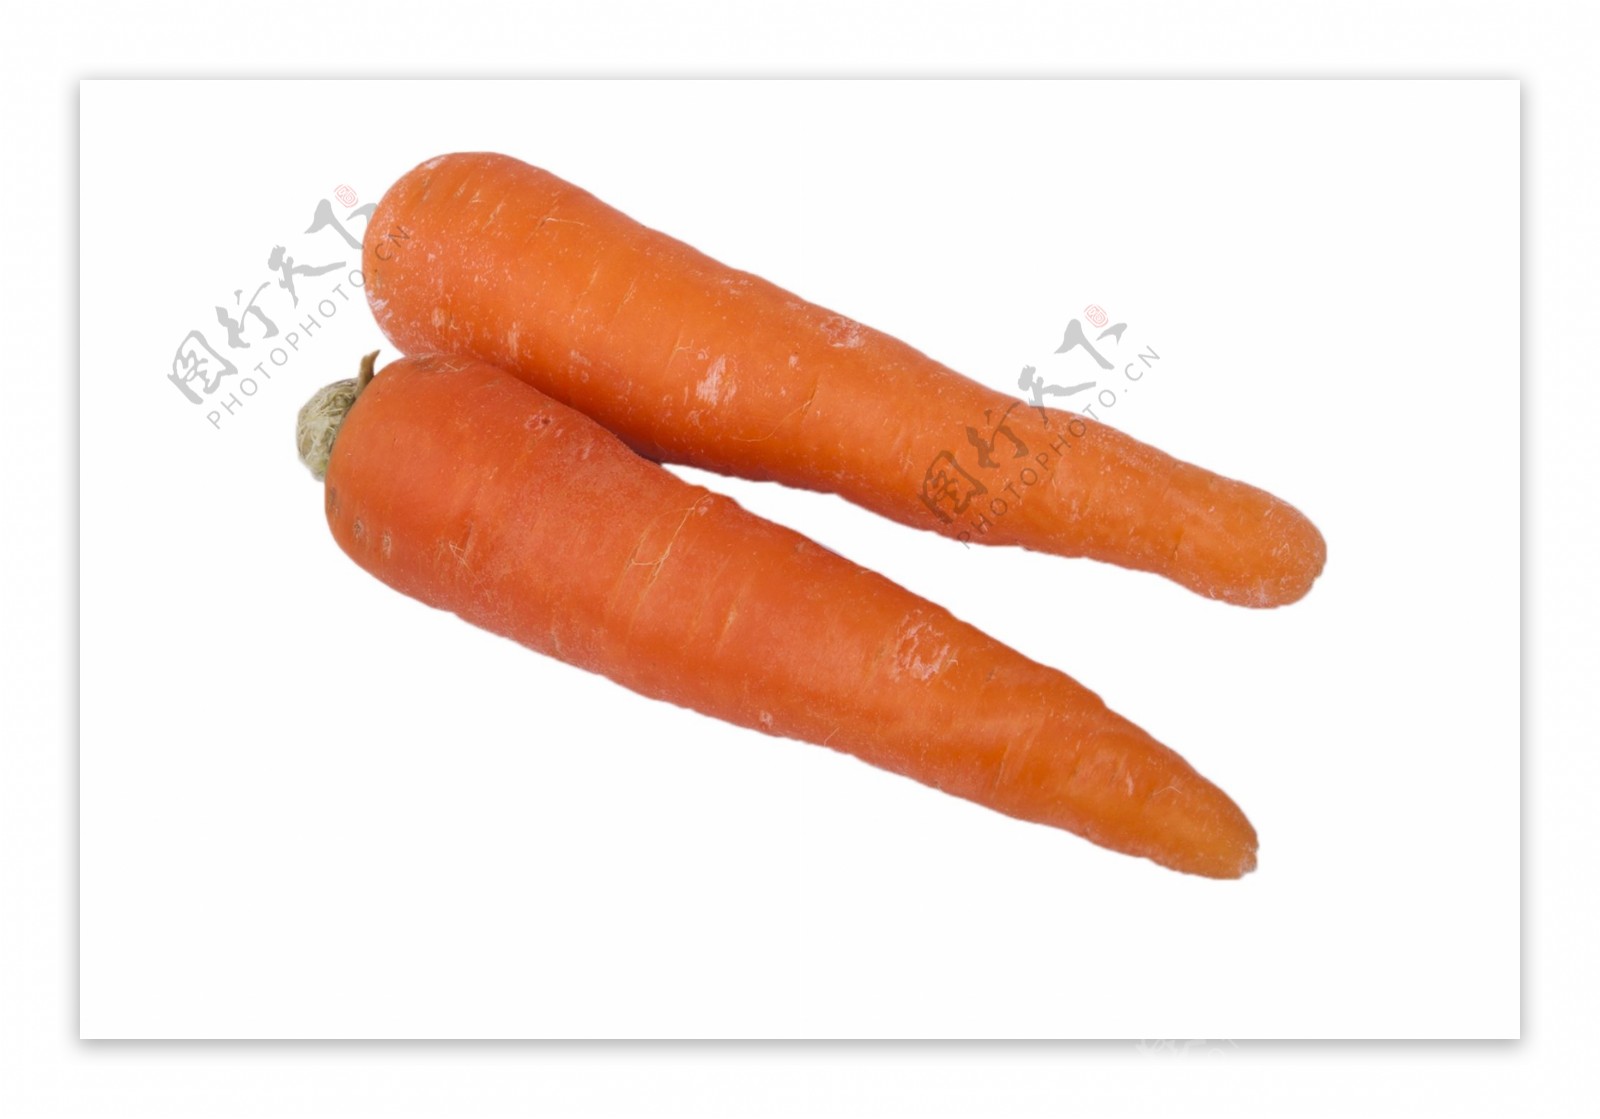 两根美味营养的胡萝卜